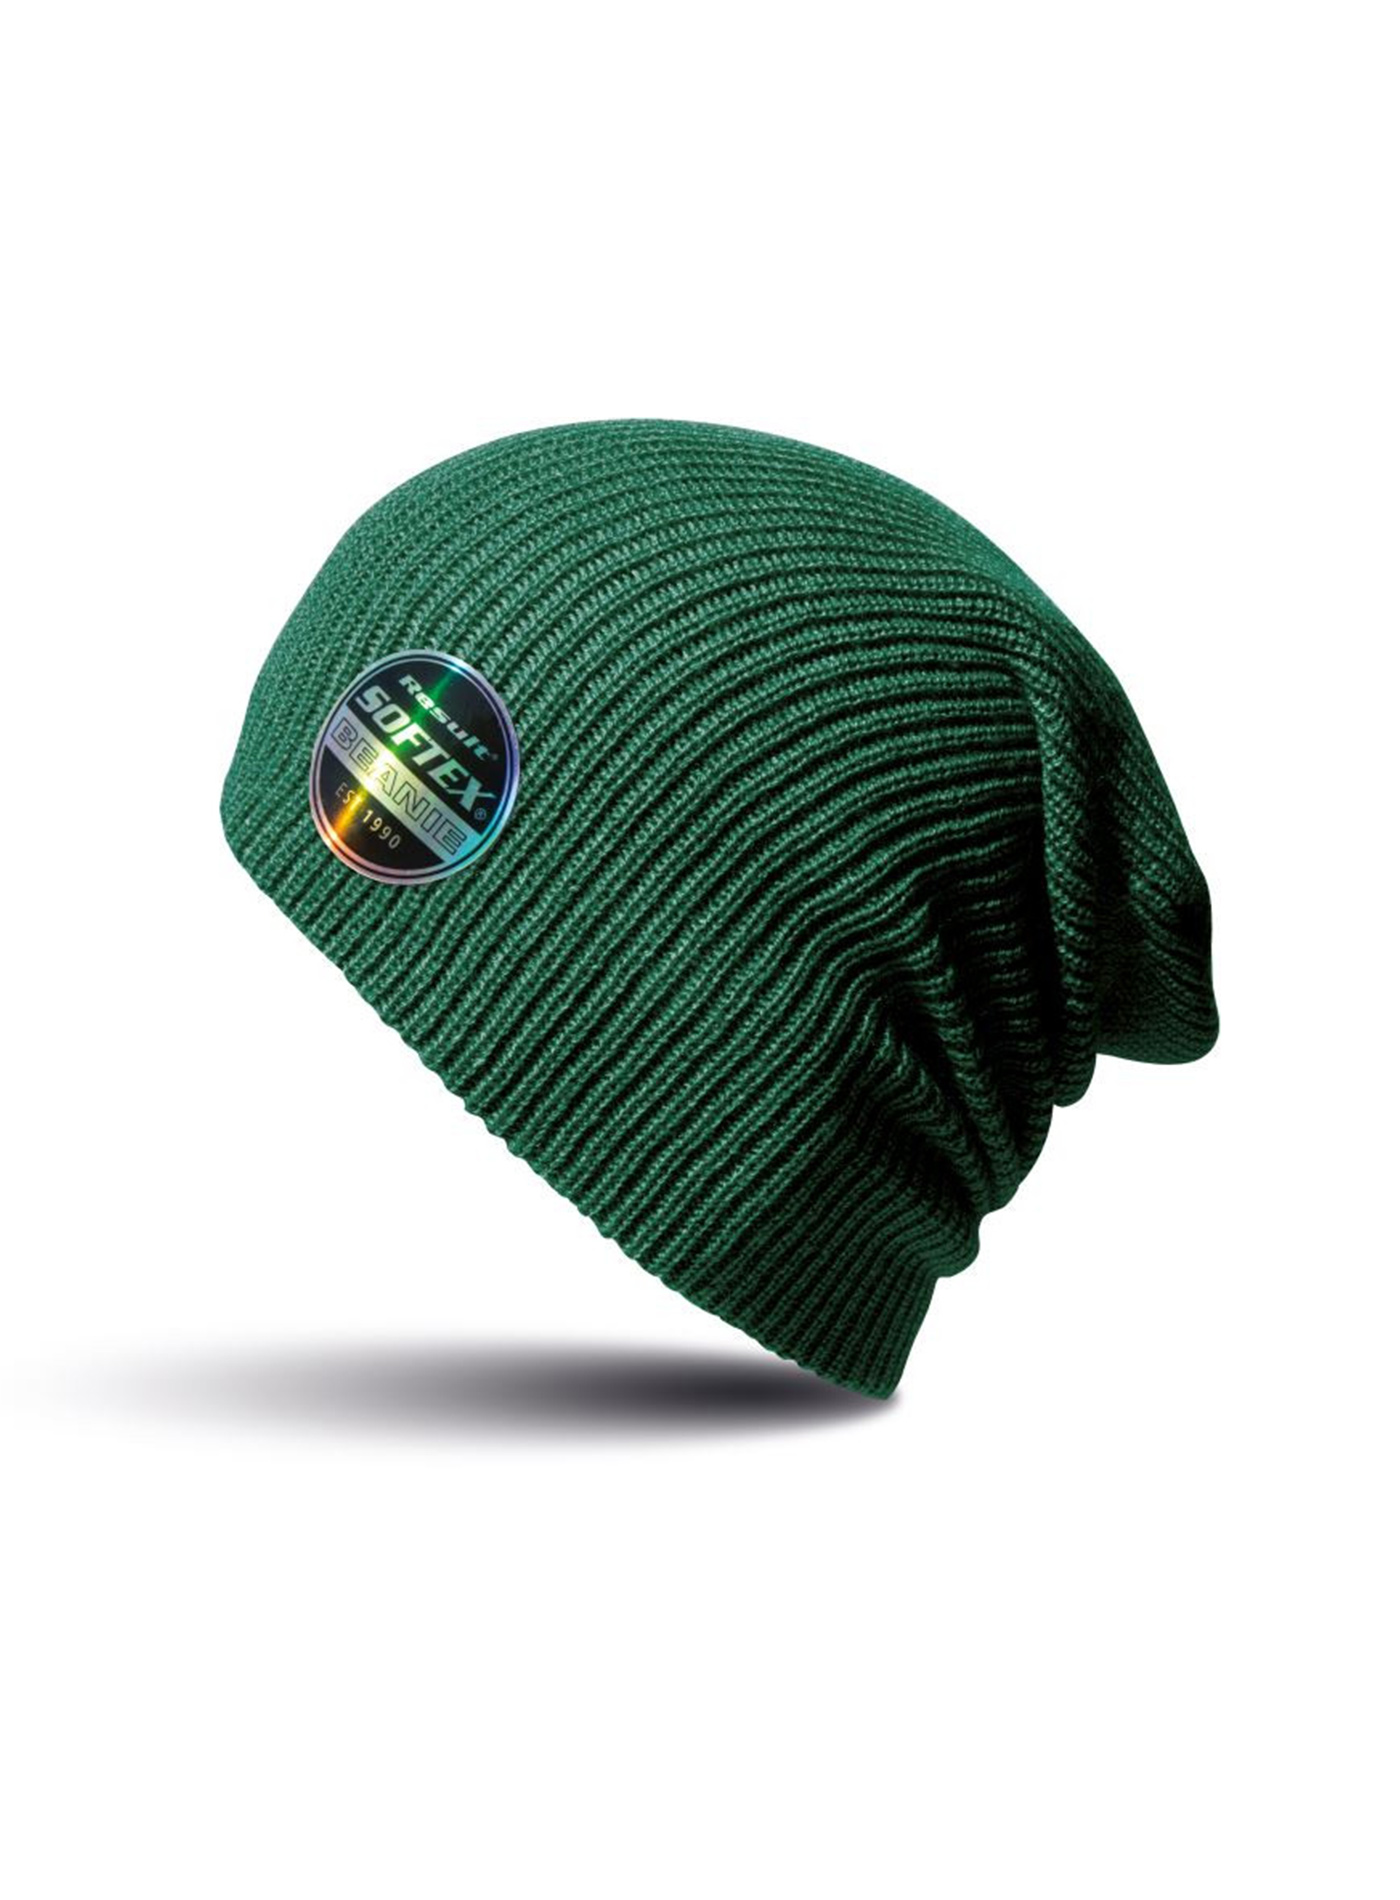 Čepice Result headwear softex beanie - Lahvově zelená univerzal